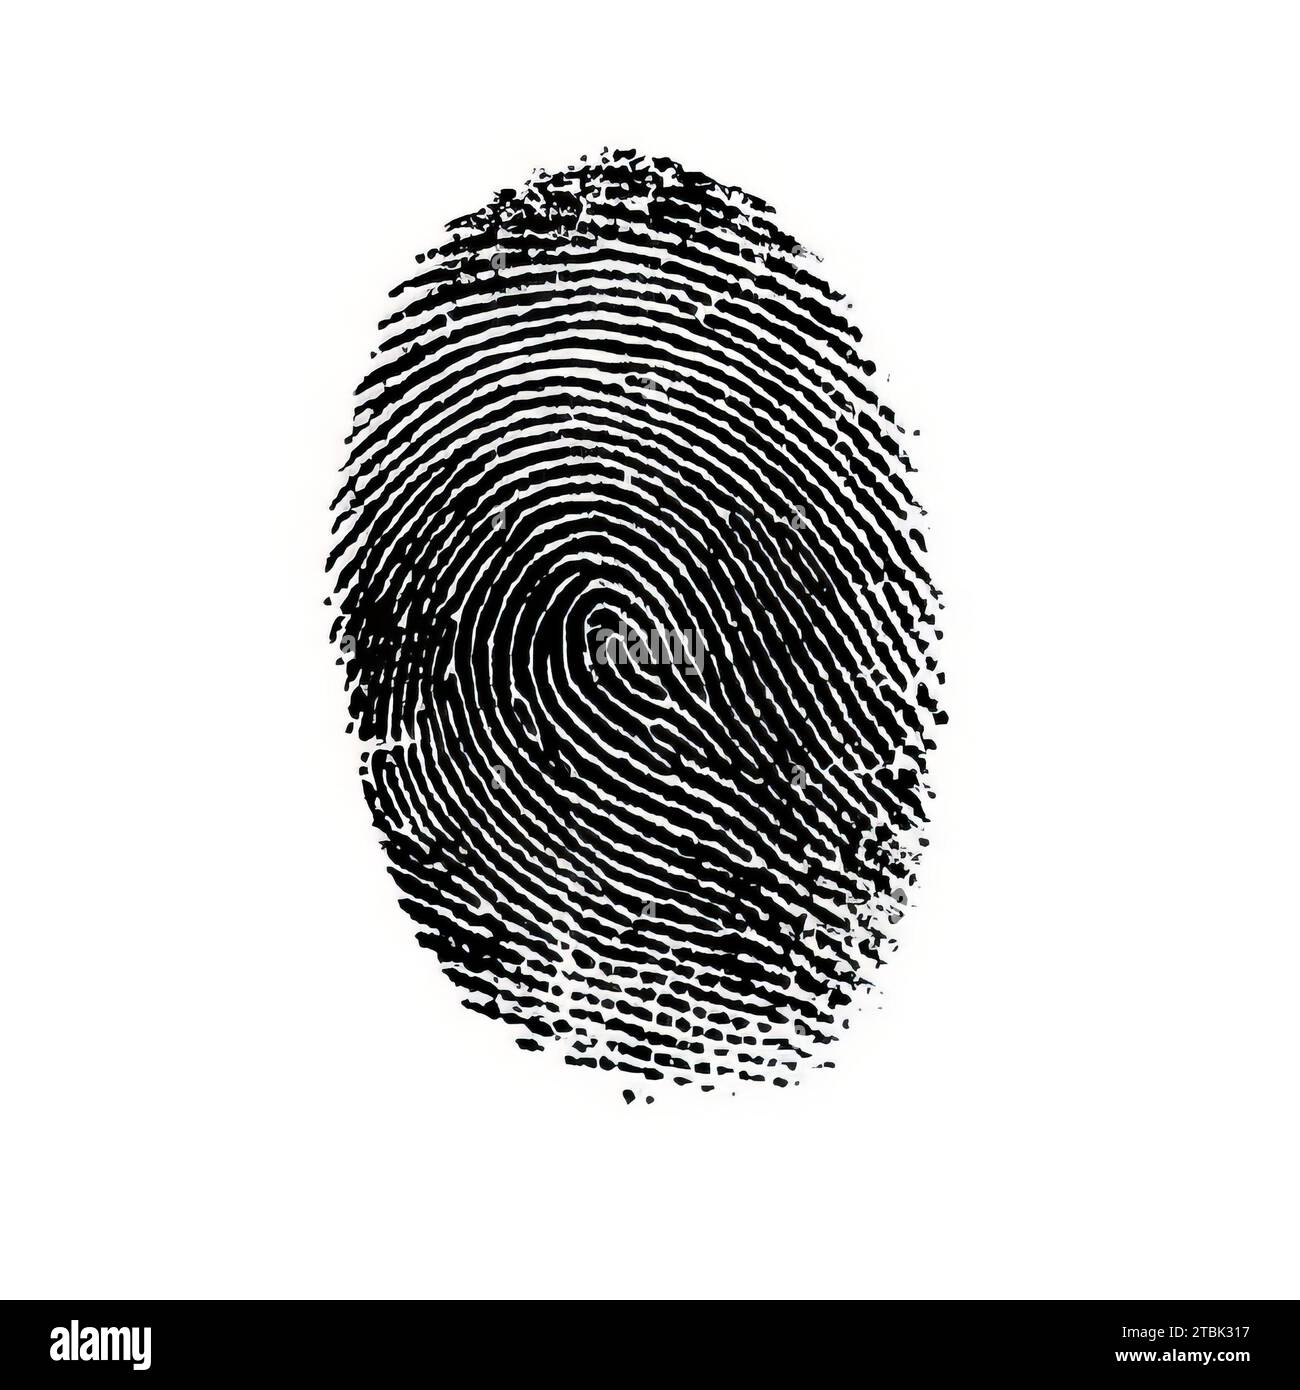 Concept de vérification d'identité d'empreinte digitale, contexte de recherche biométrique criminelle Banque D'Images